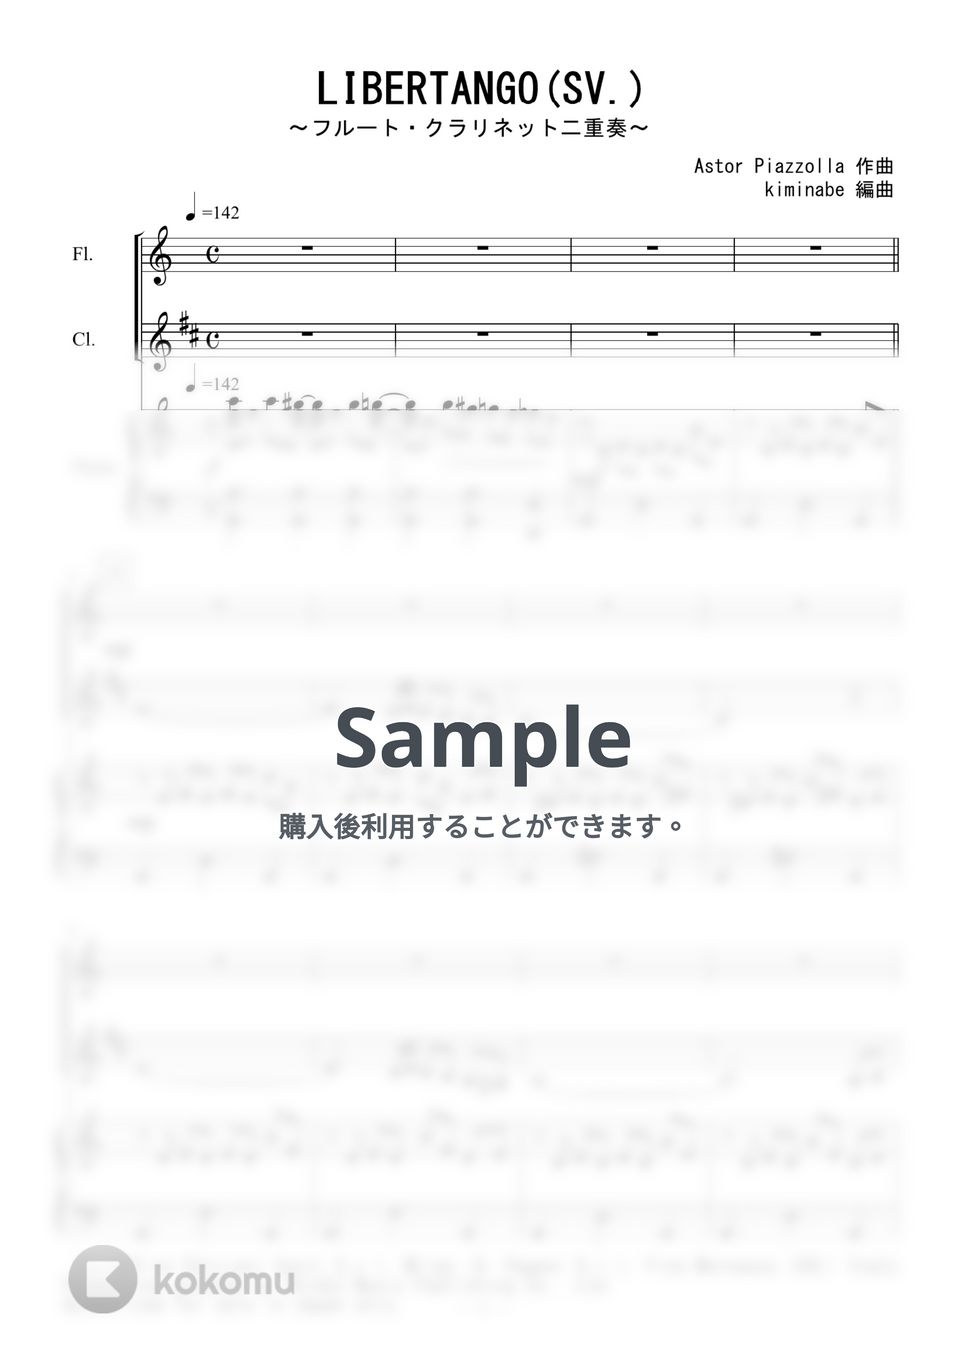 ピアソラ - LIBERTANGO (フルート・クラリネット二重奏／SV.) by kiminabe